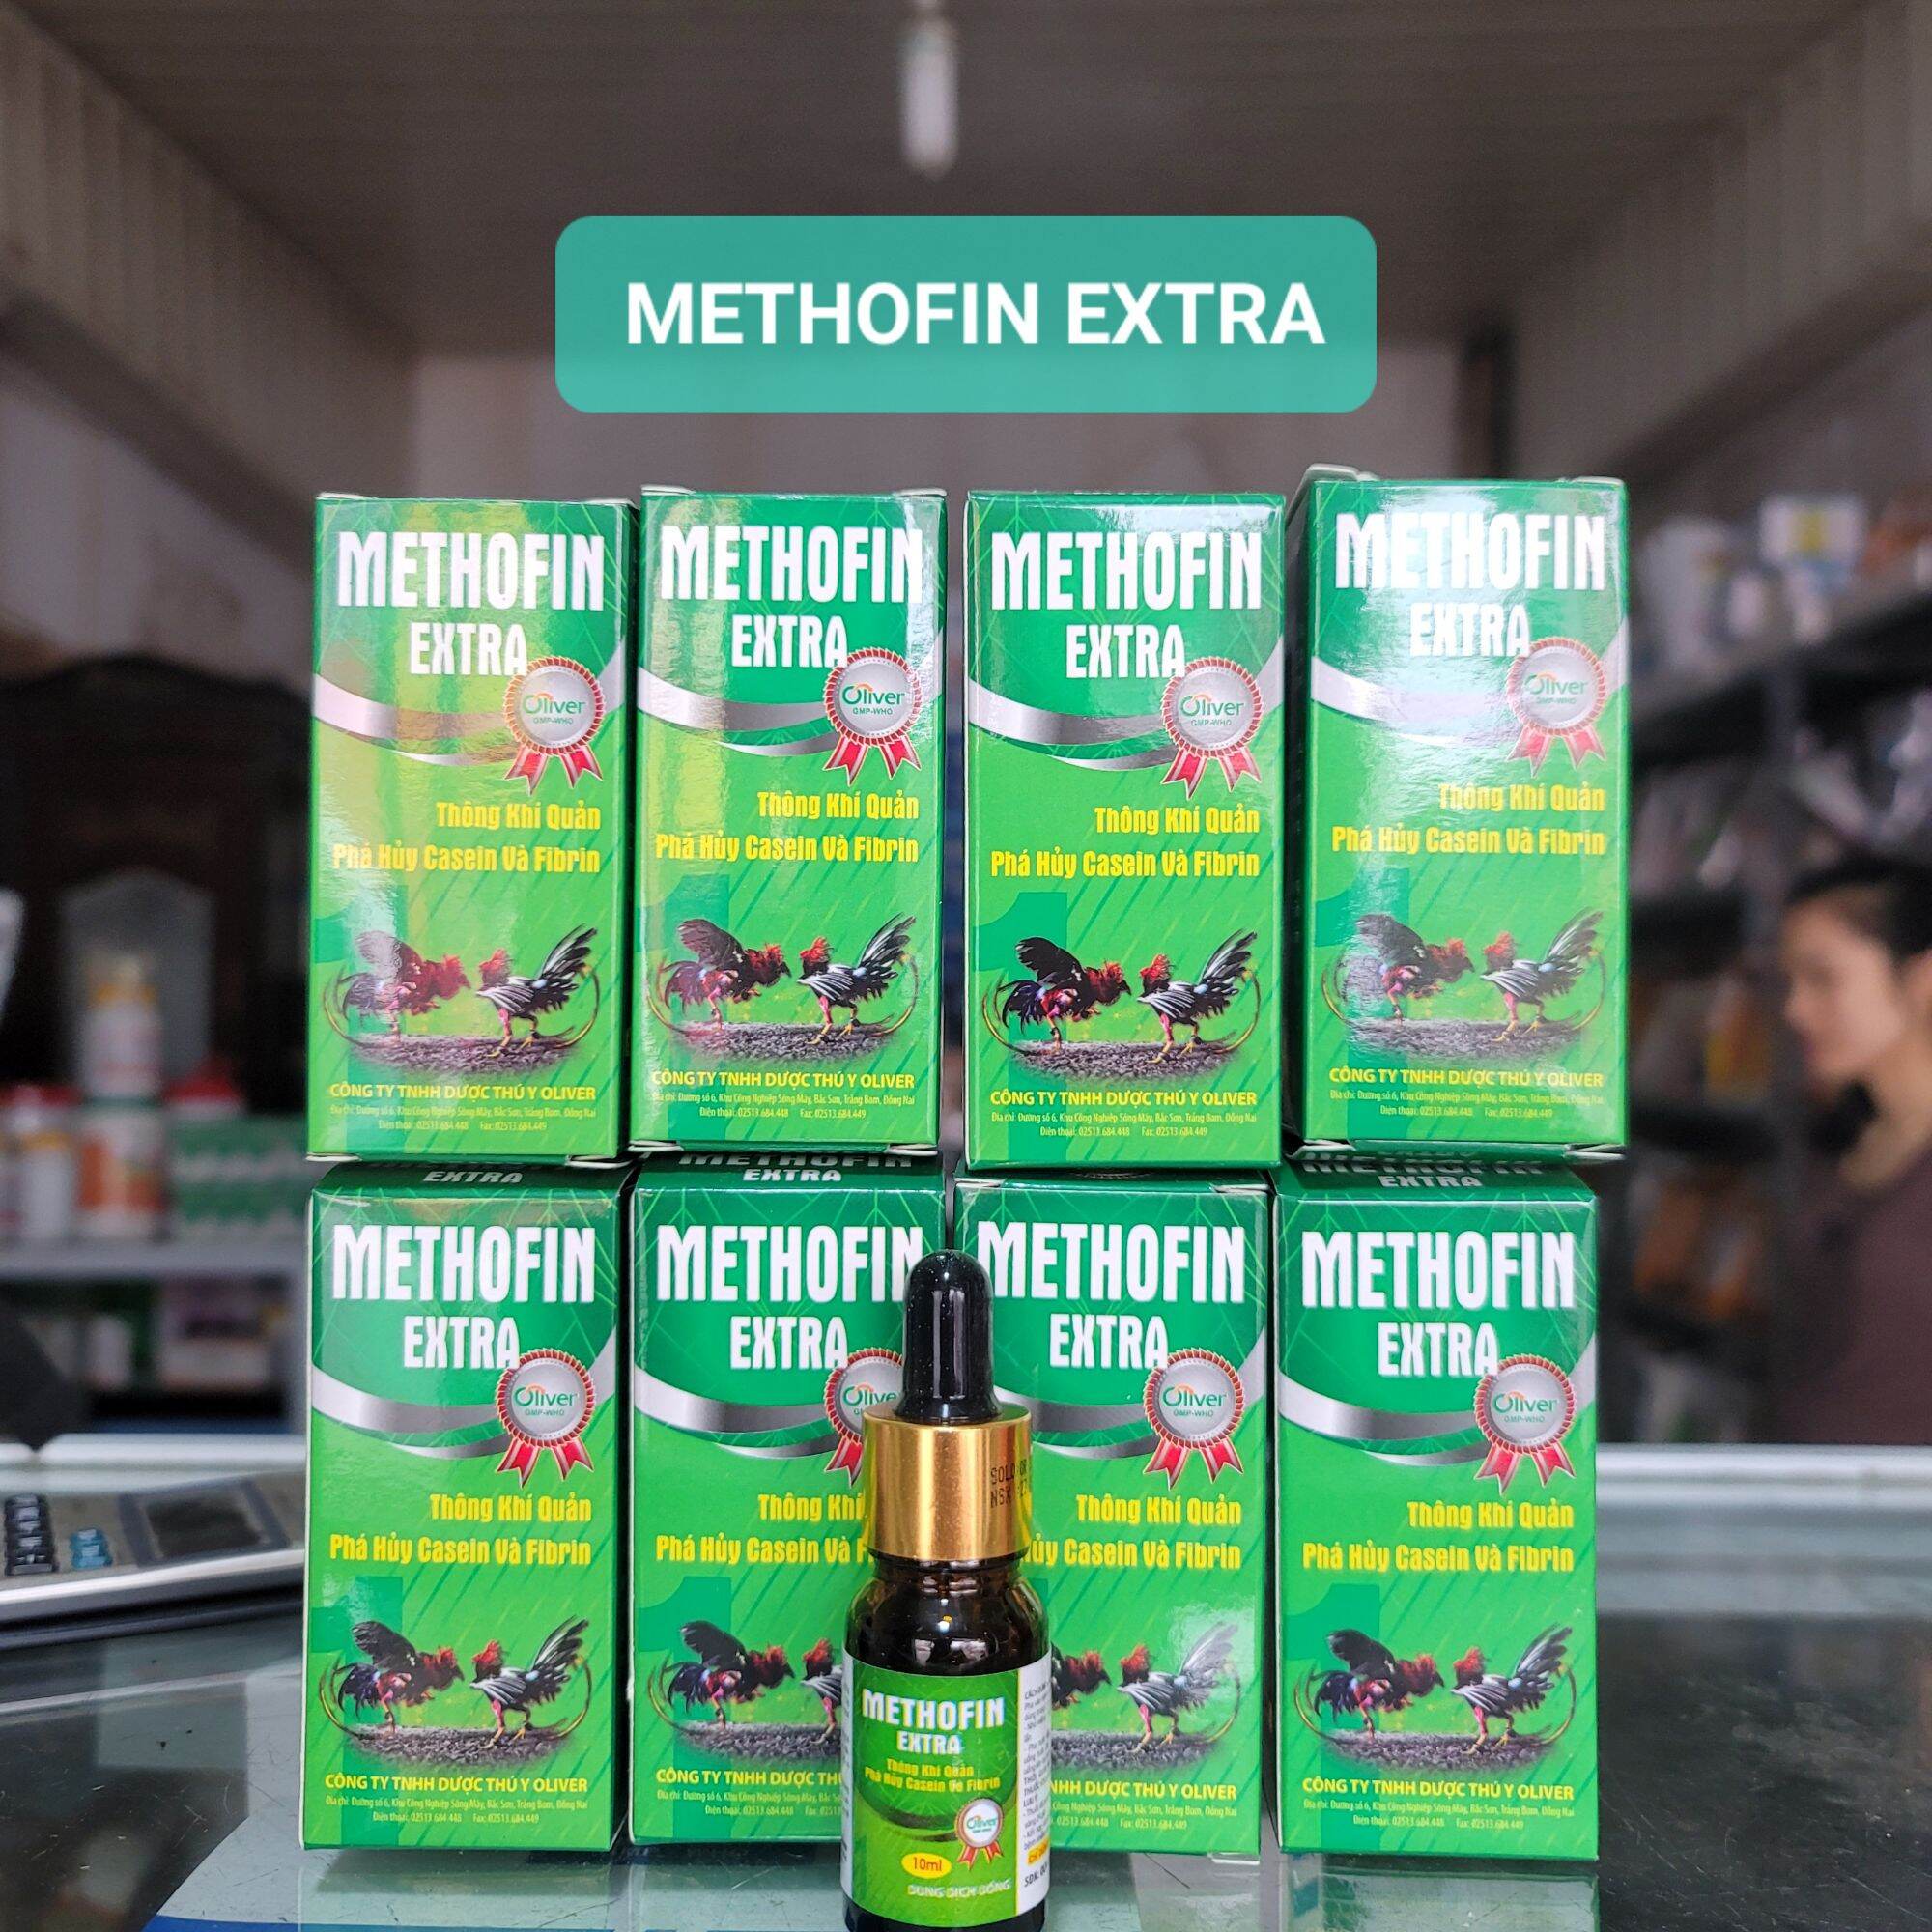 METHOFIN EXTRA 10ml- Thông khí quản, phá hủy casein và fibrin ở gà